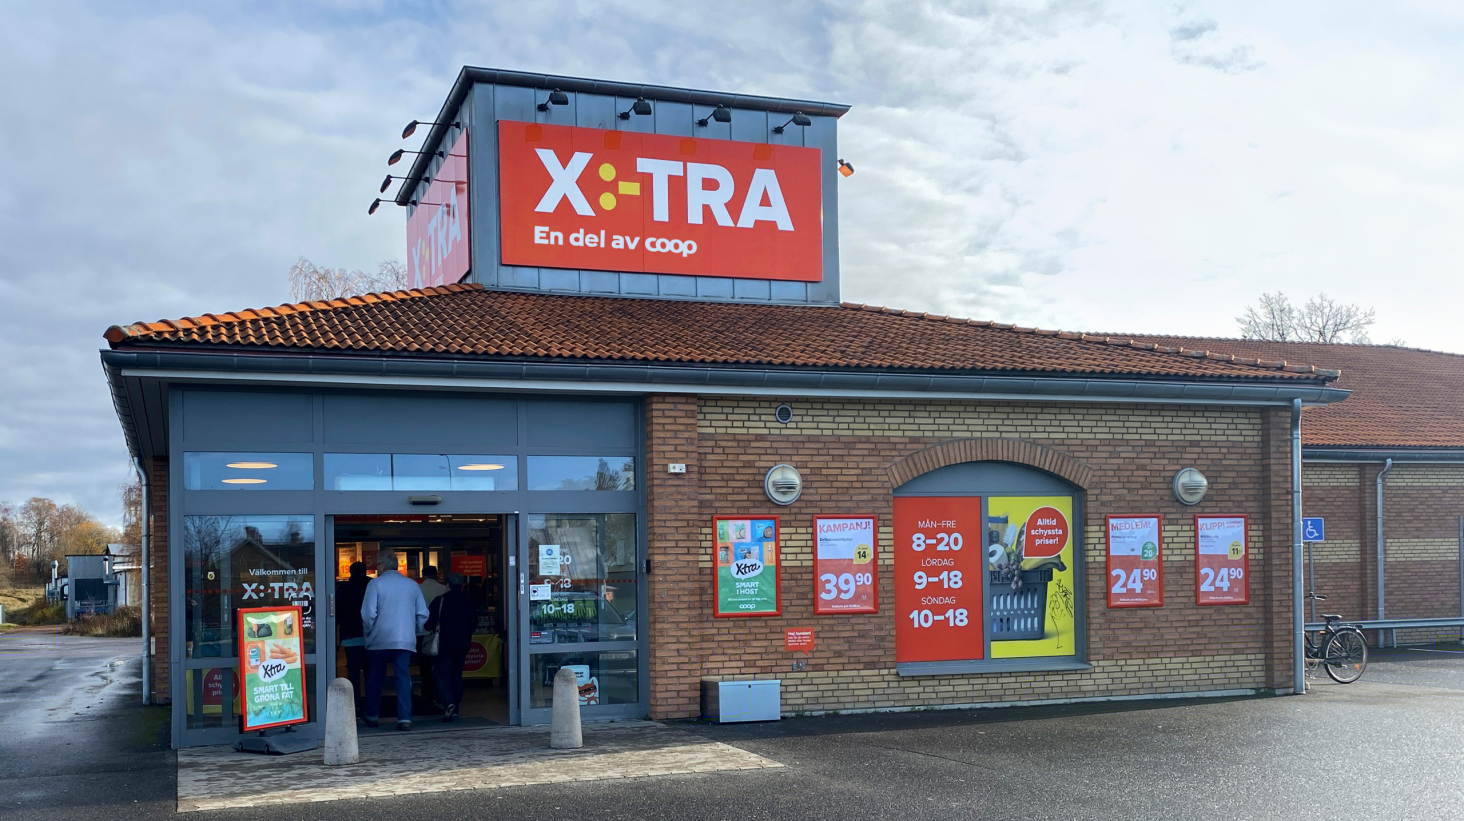 X:-tra, nytt svenskt butiksformat som ska fokusera på pris